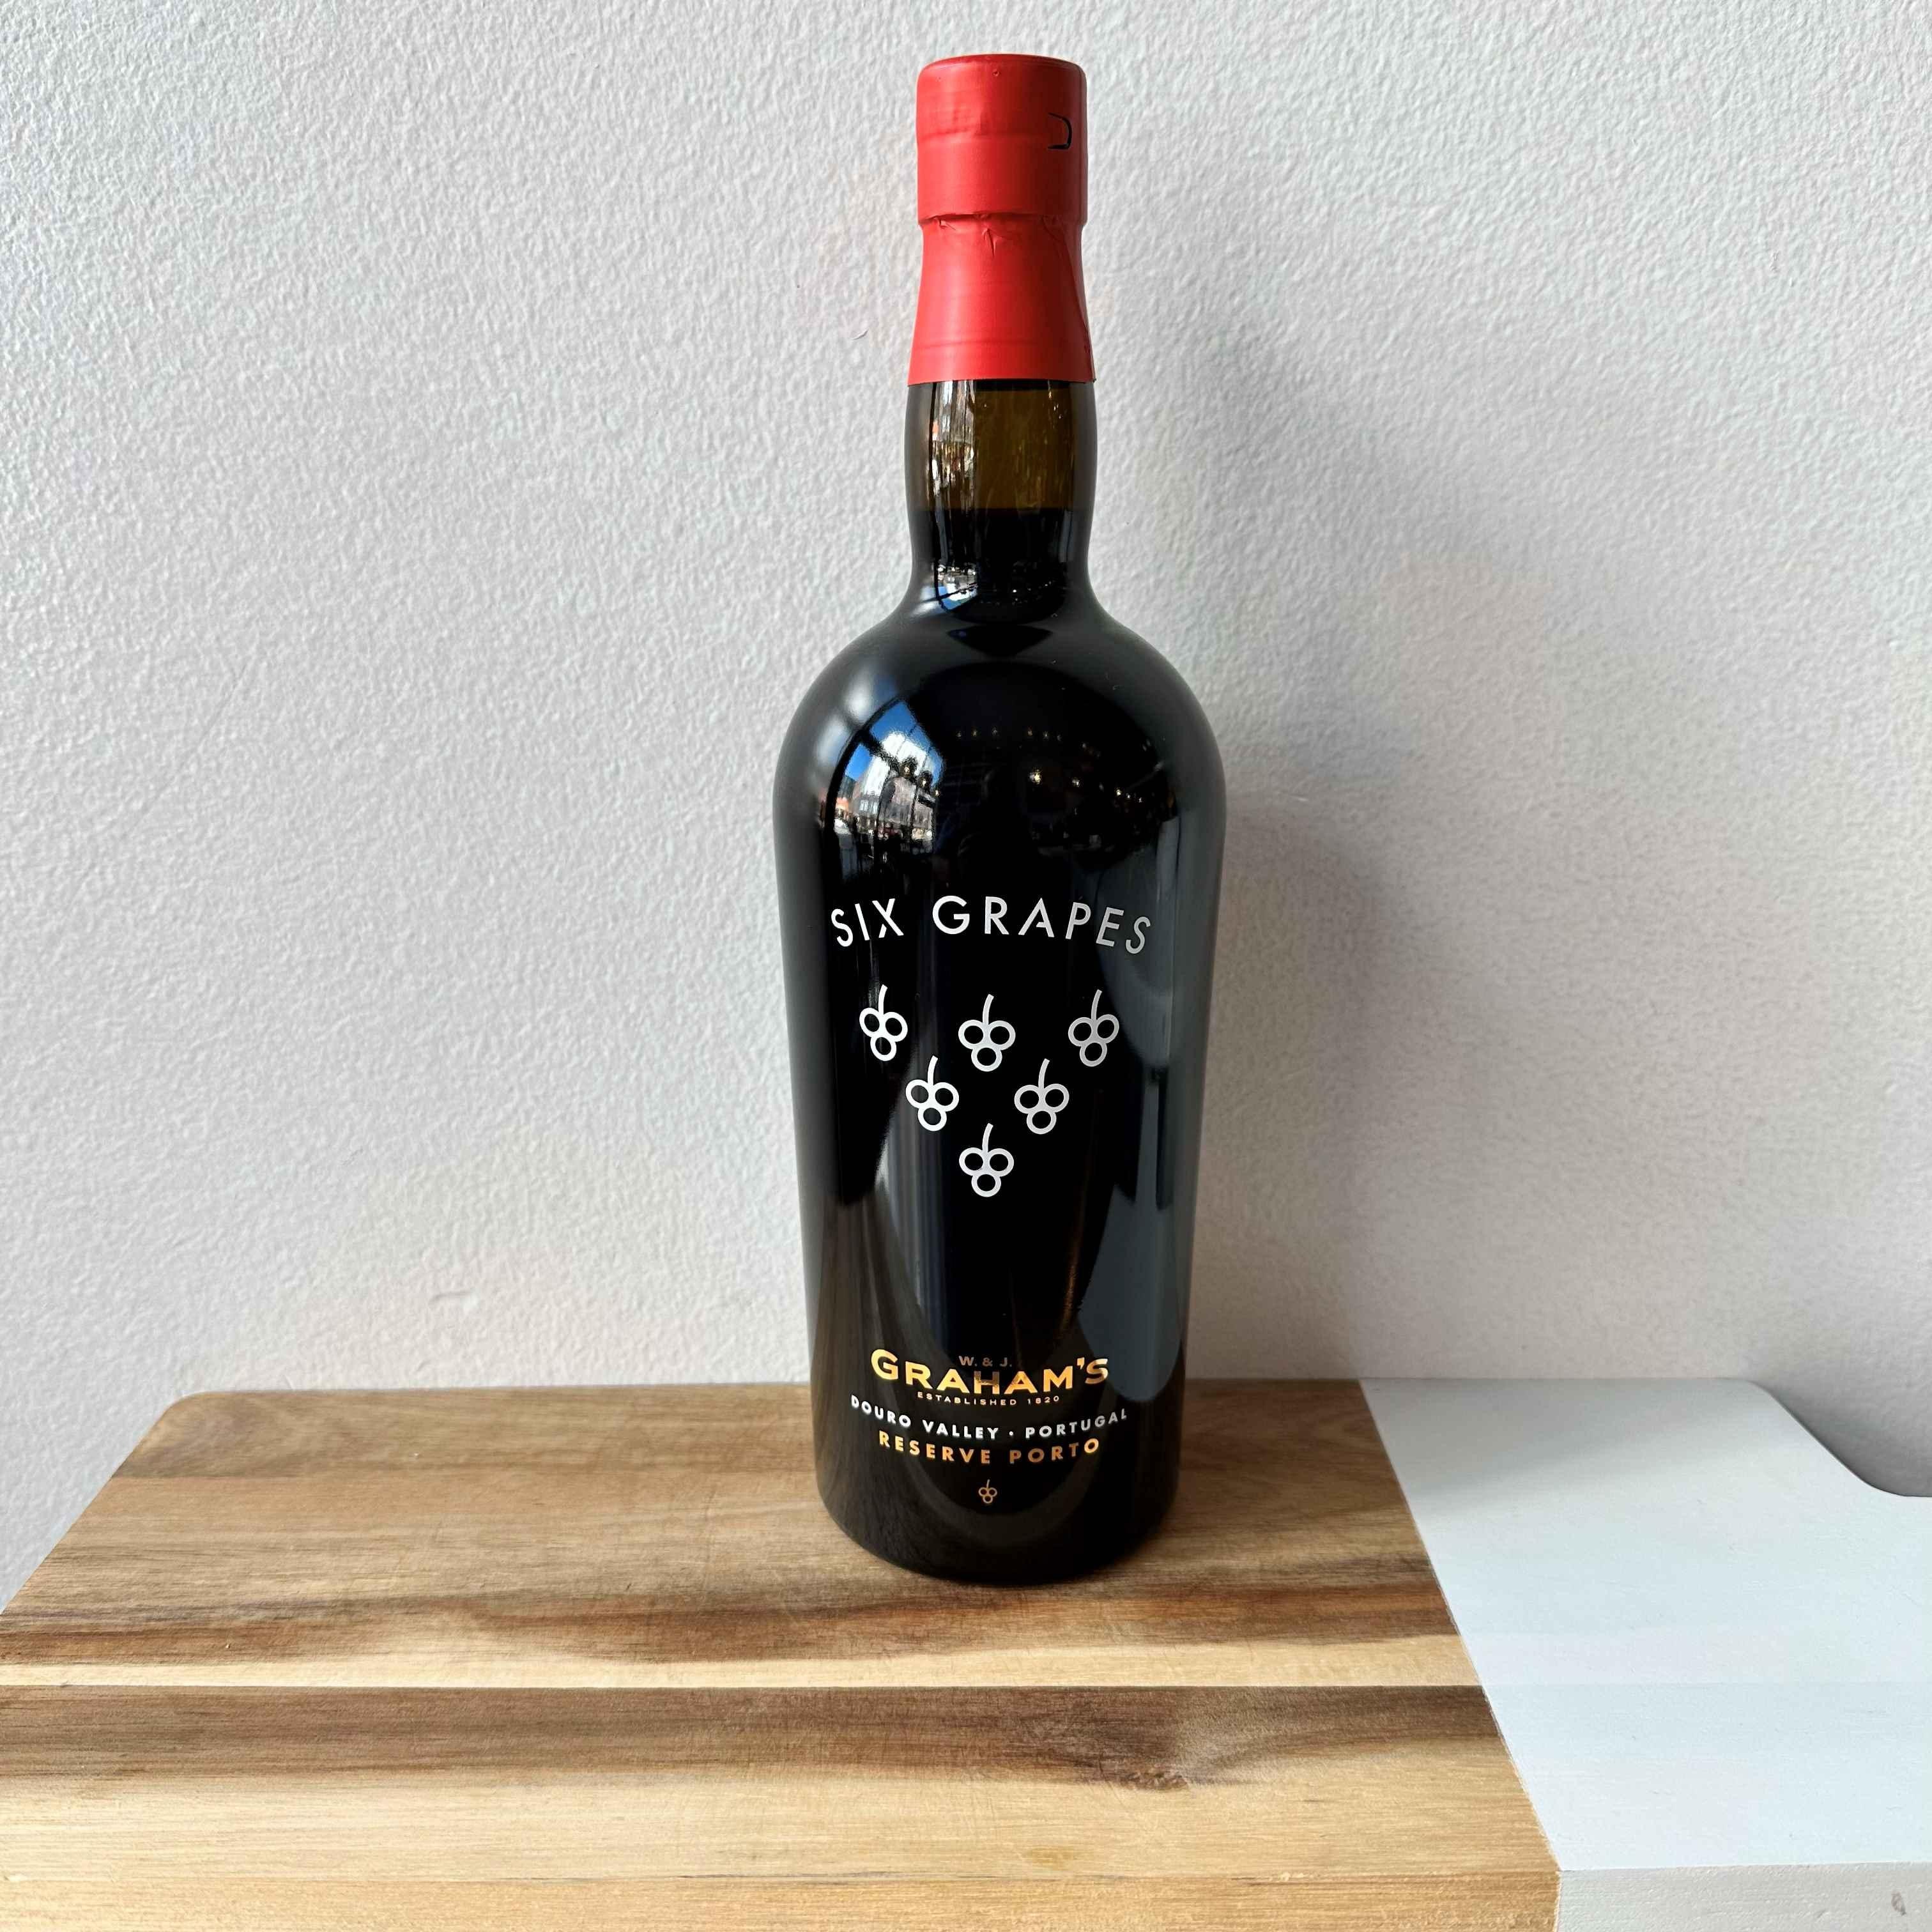 Graham's "Six Grape" Reserve Porto N/V Portugal